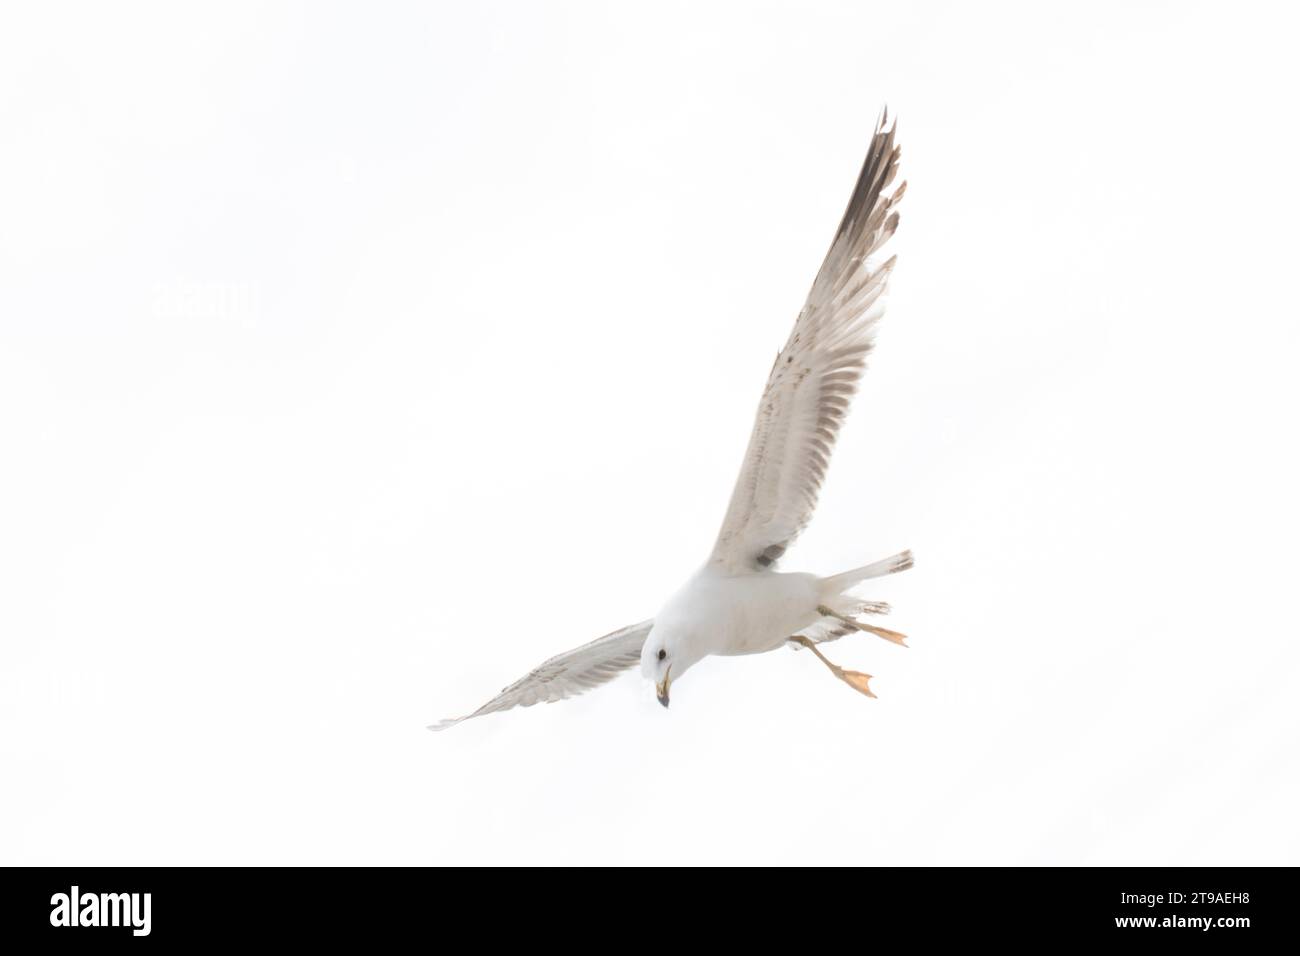 White Seagull on a white background Stock Photo